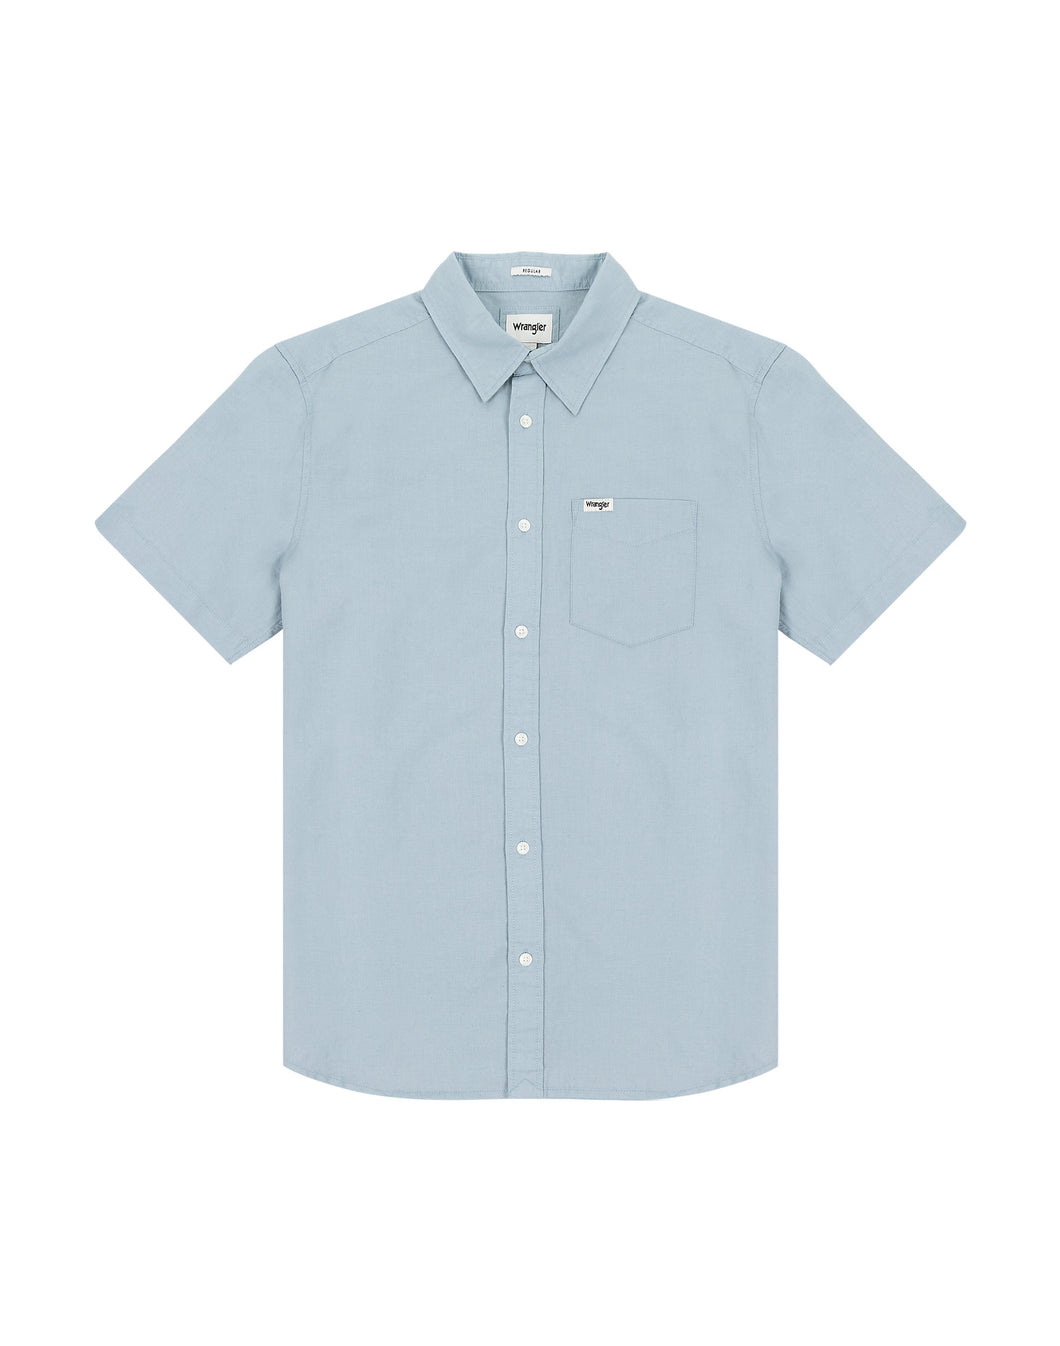 Wrangler pale blue short sleeve shirt